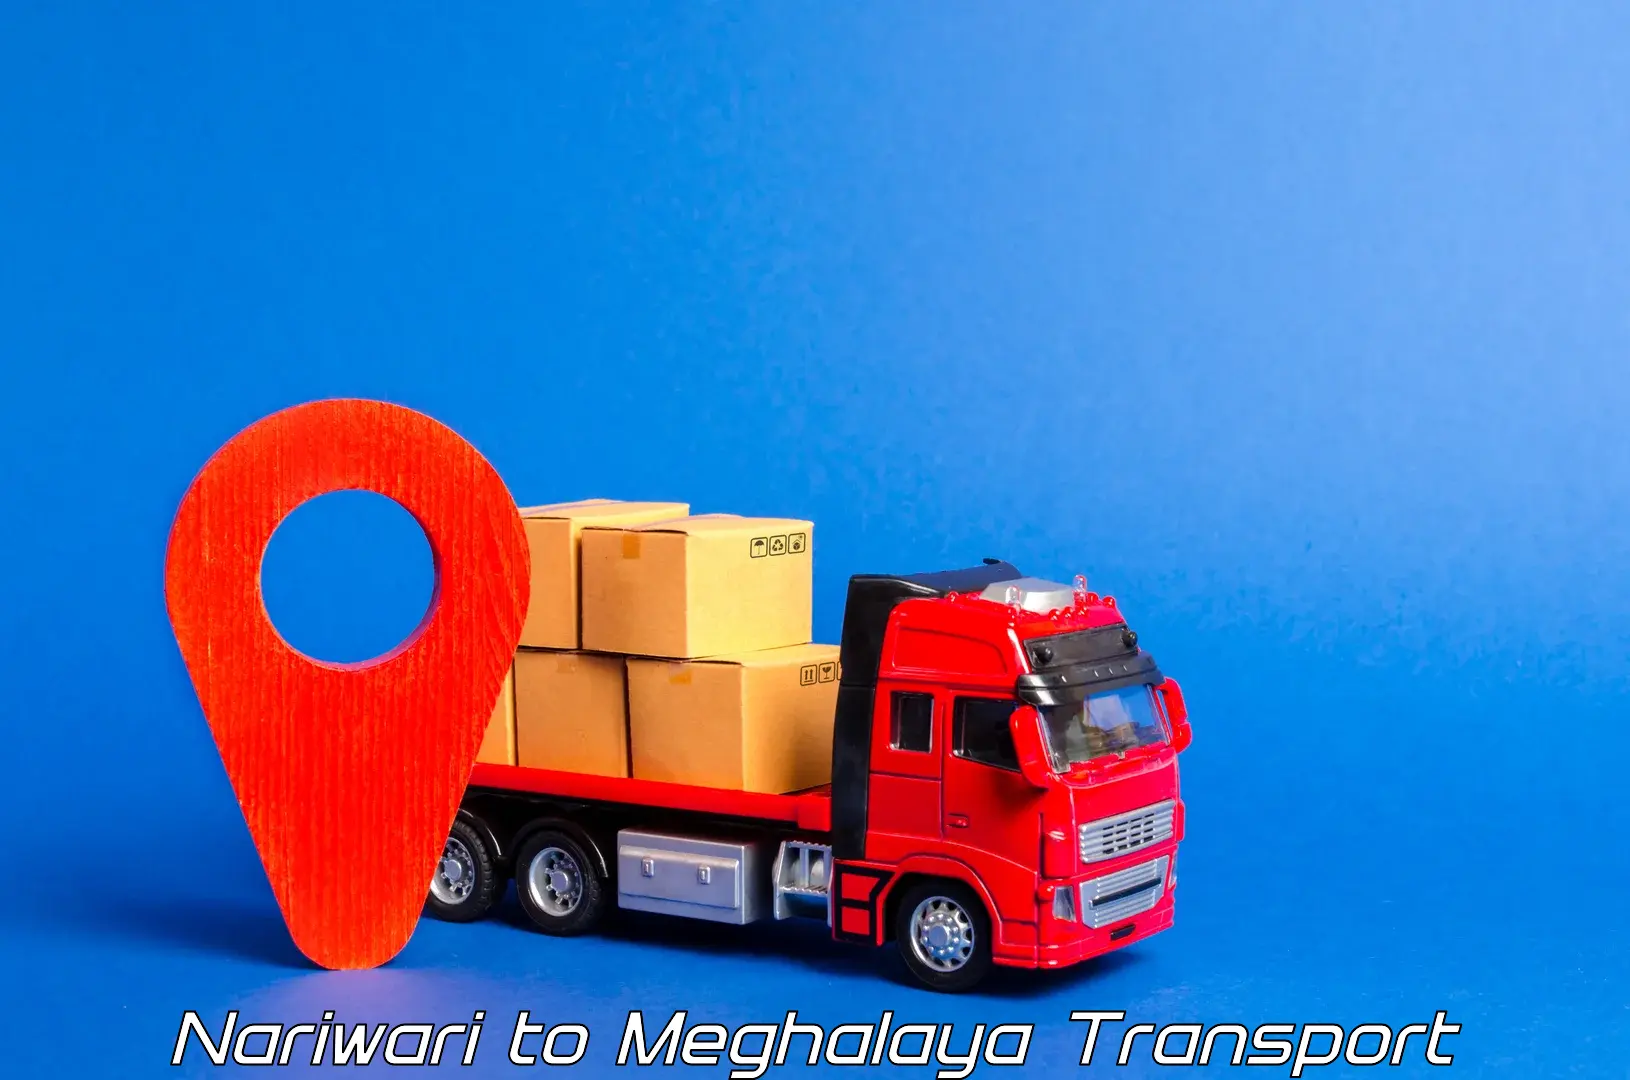 Transportation services Nariwari to Meghalaya